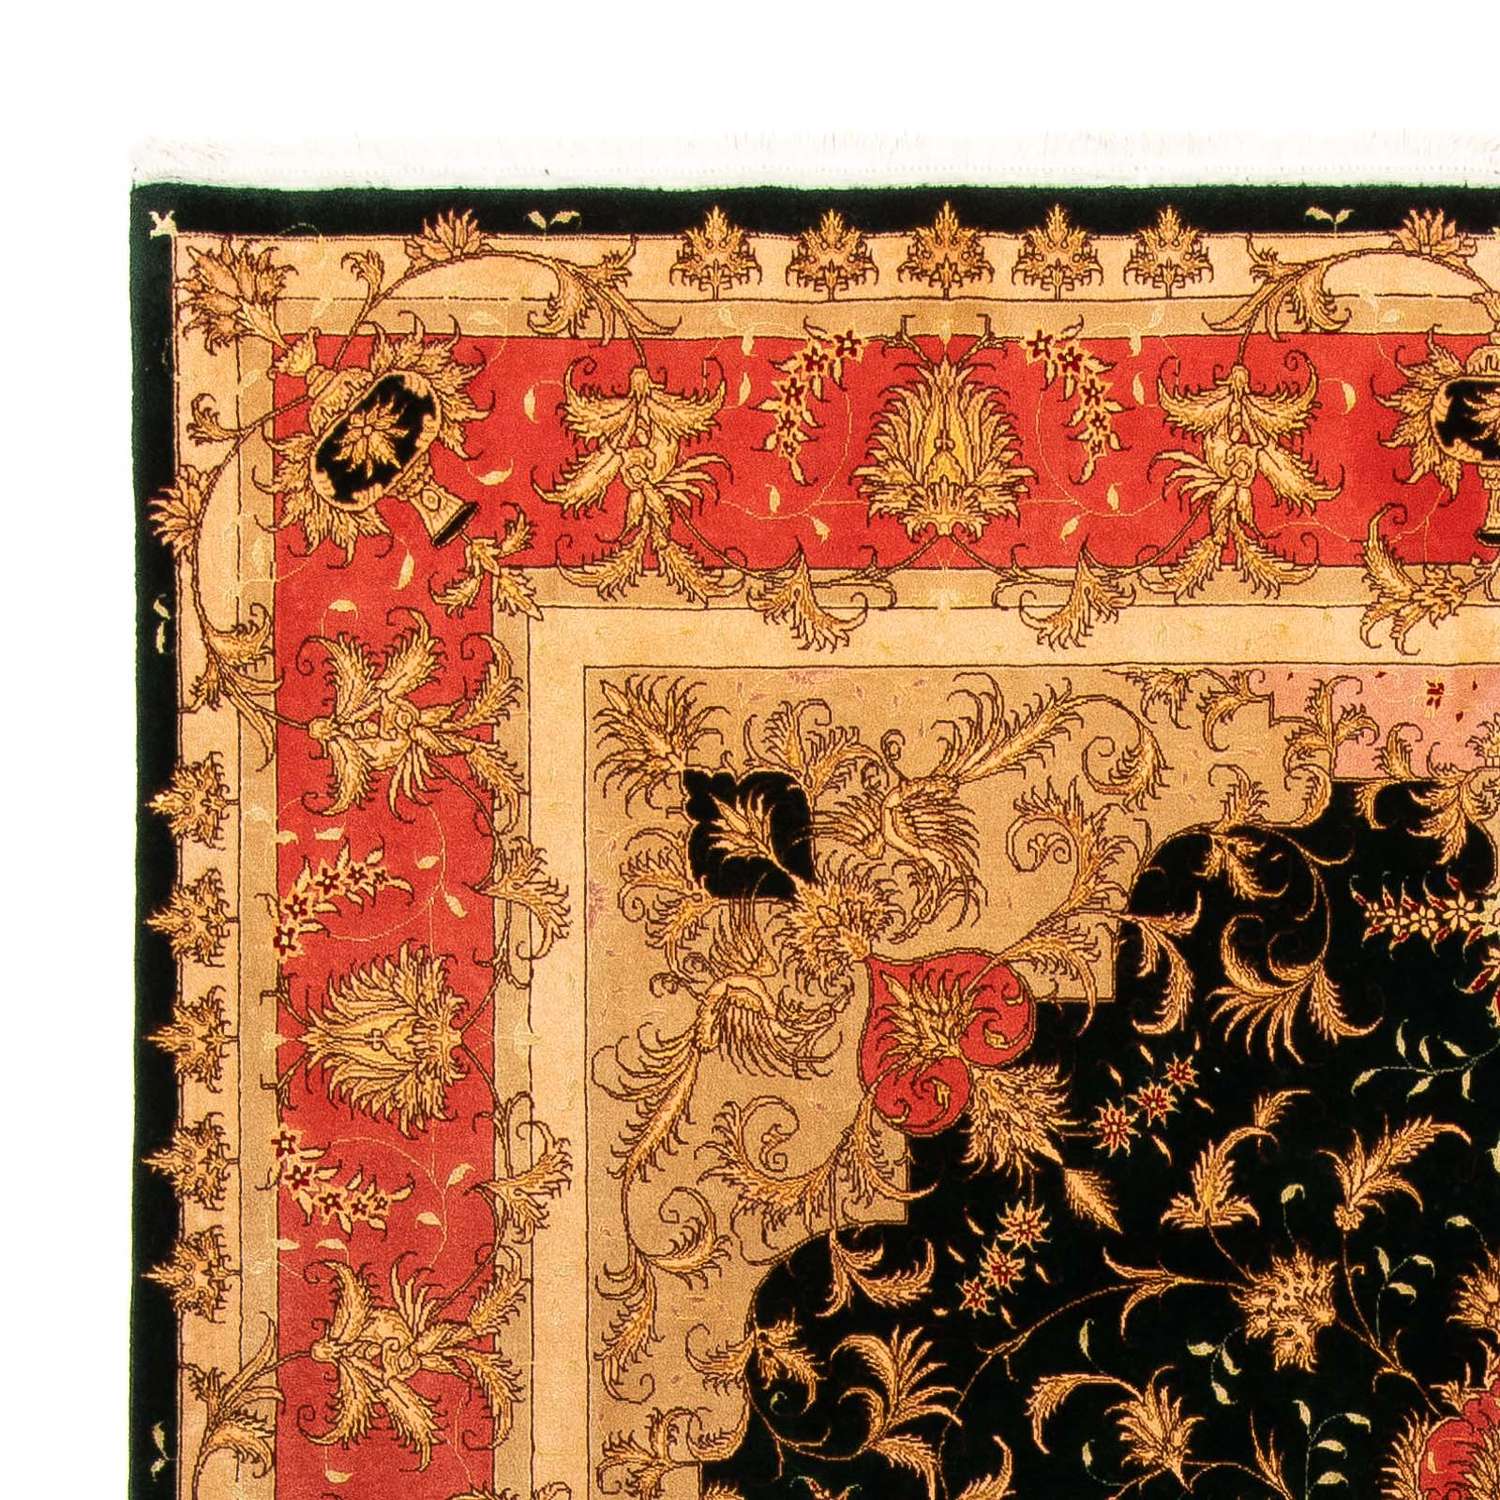 Persisk tæppe - Tabriz - Royal - 300 x 198 cm - mørkeblå